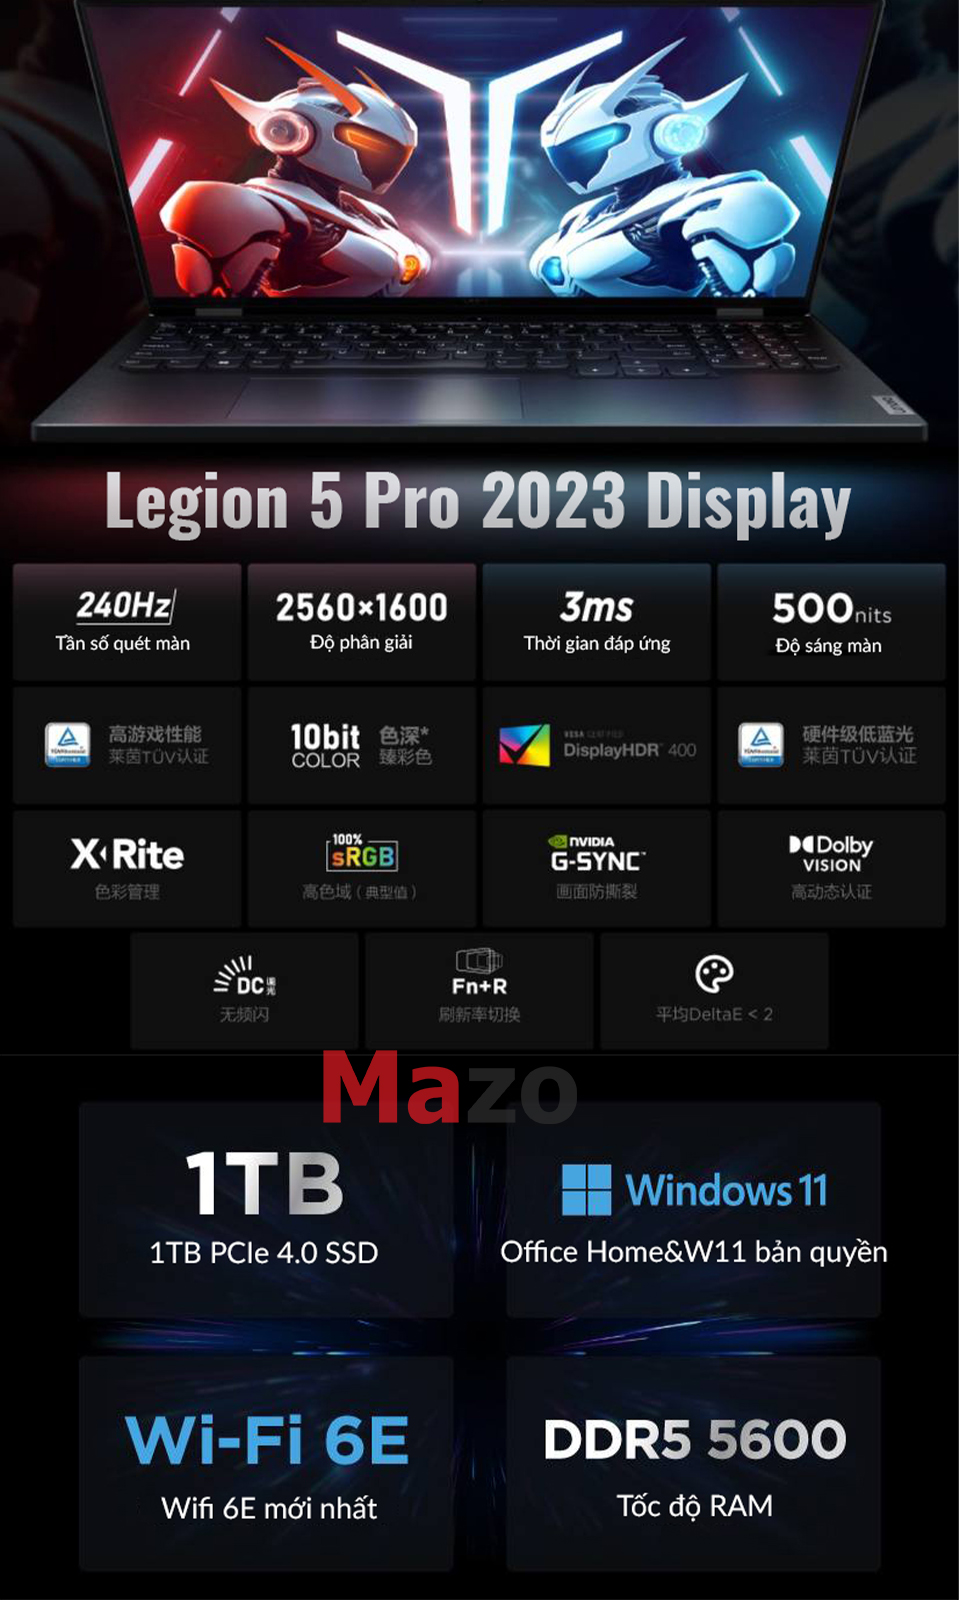 legion 5 pro display.jpeg